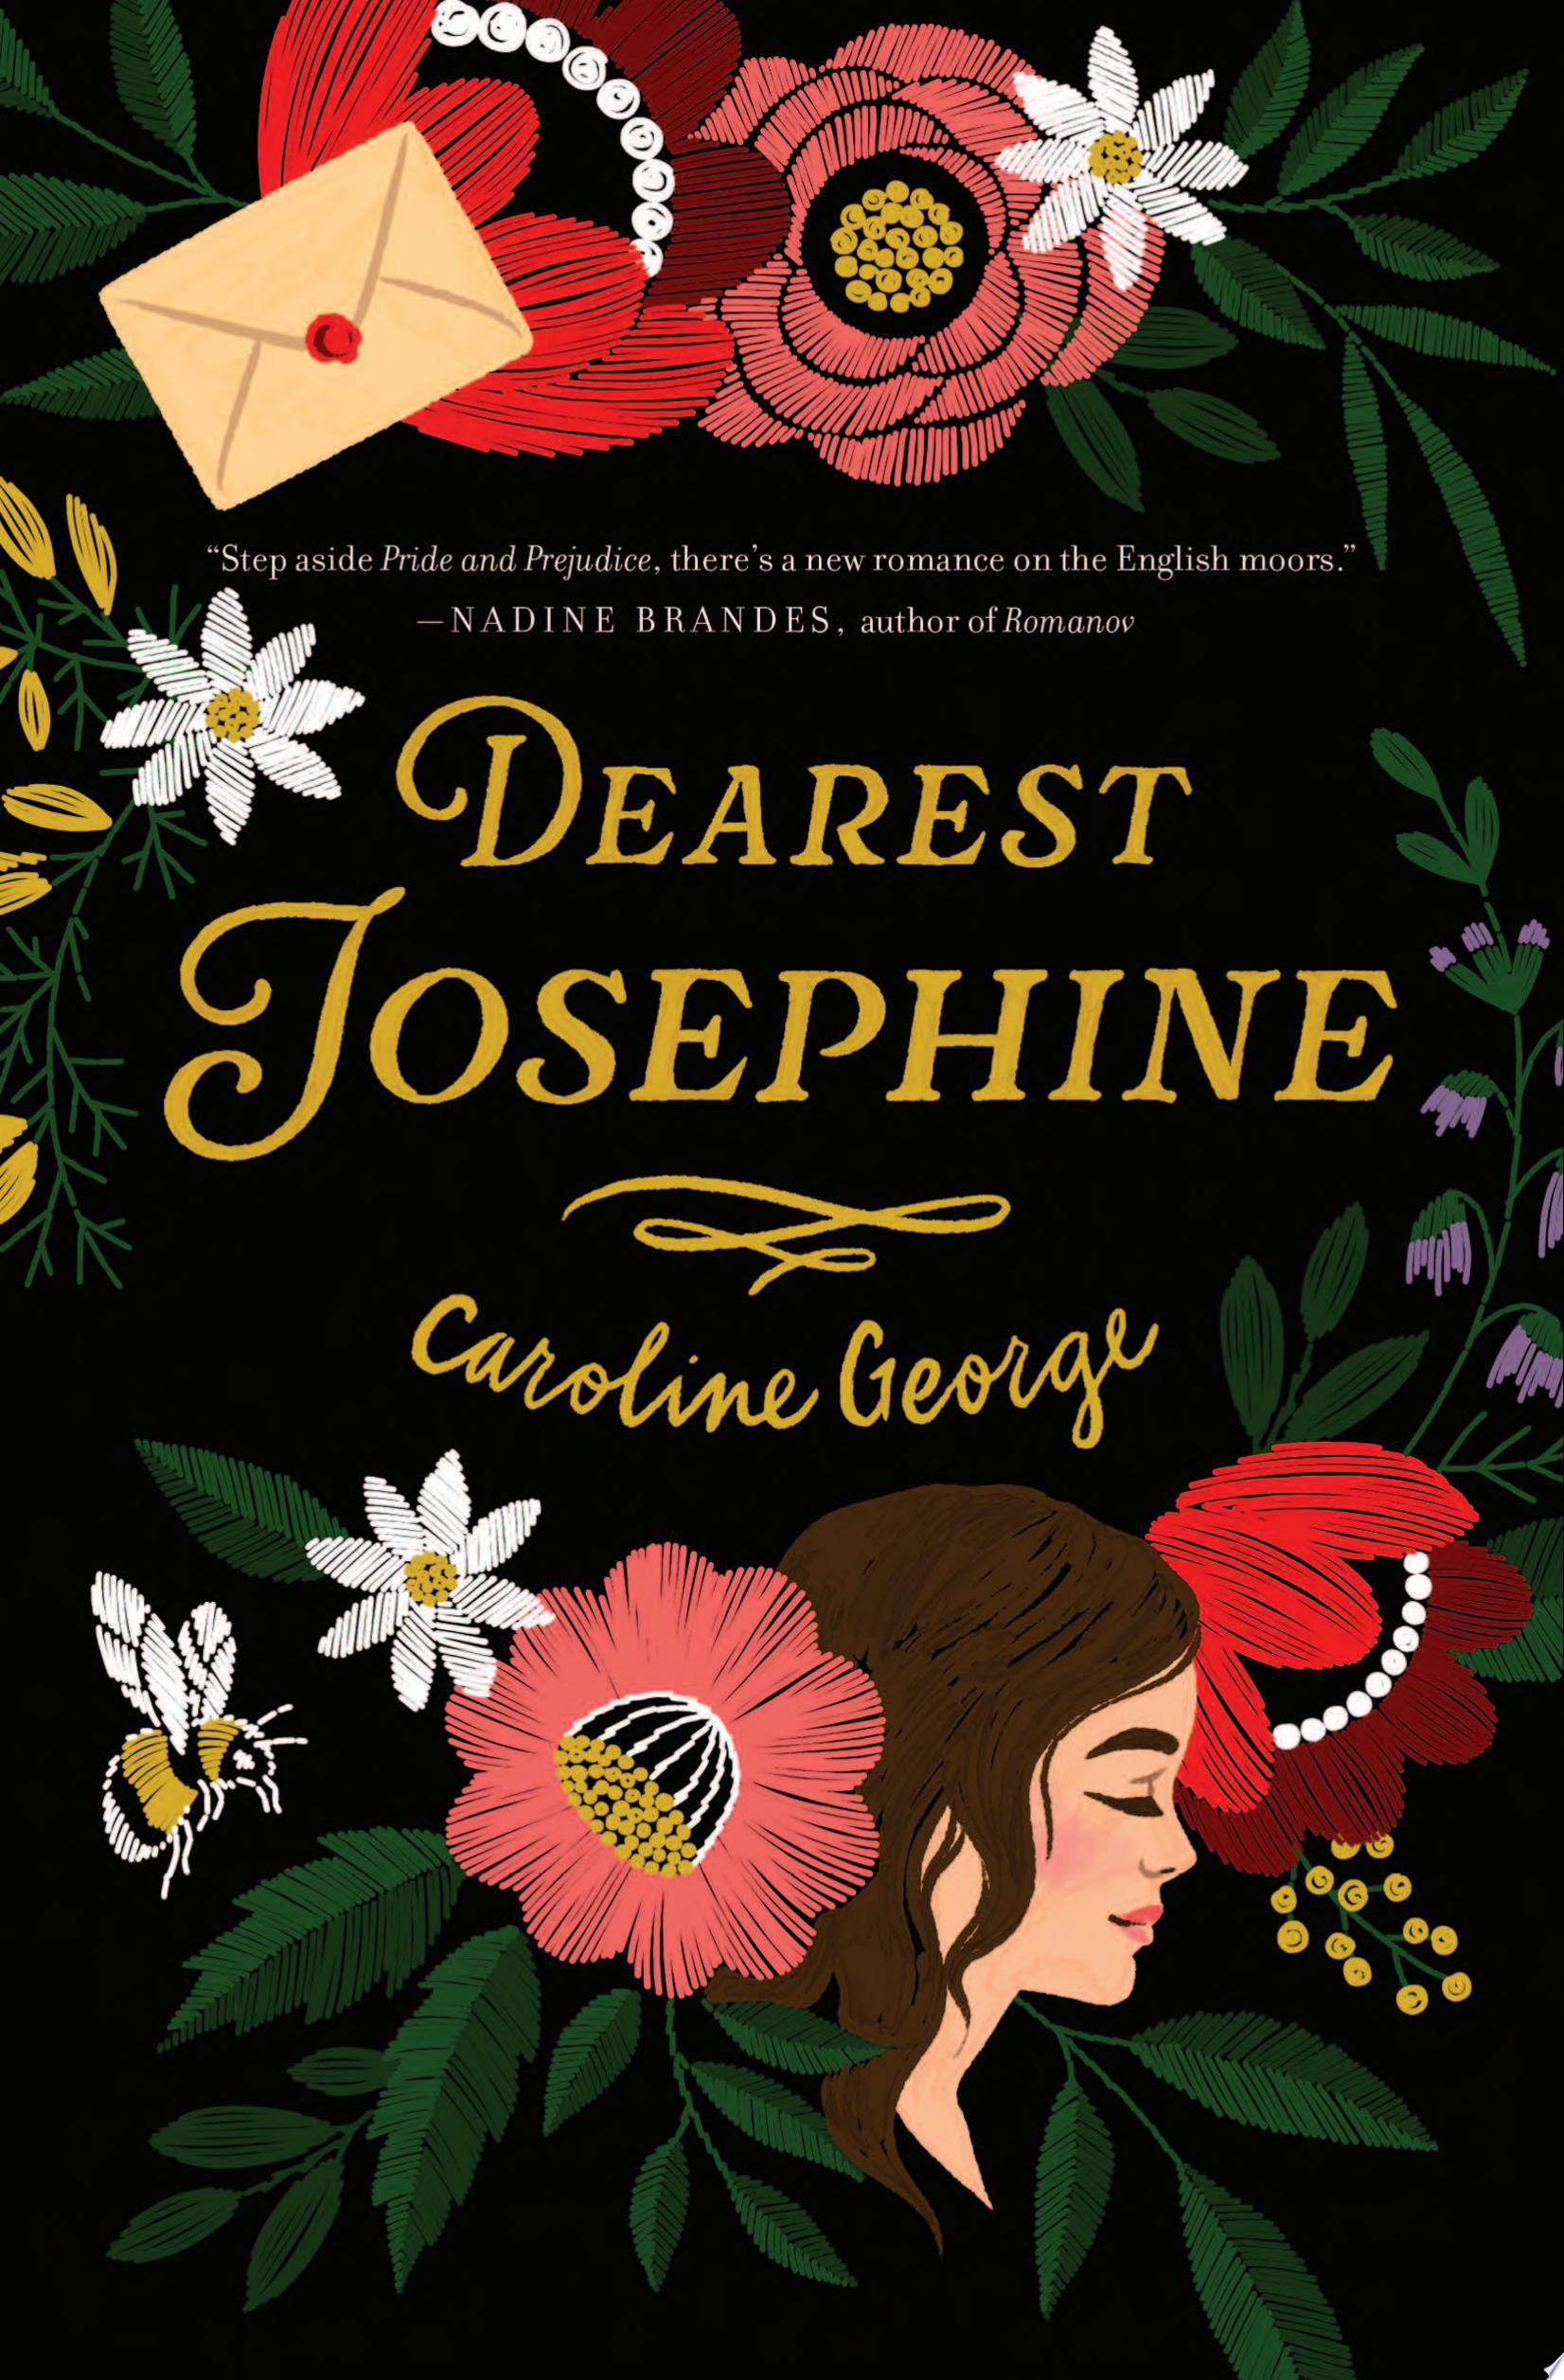 Image for "Dearest Josephine"